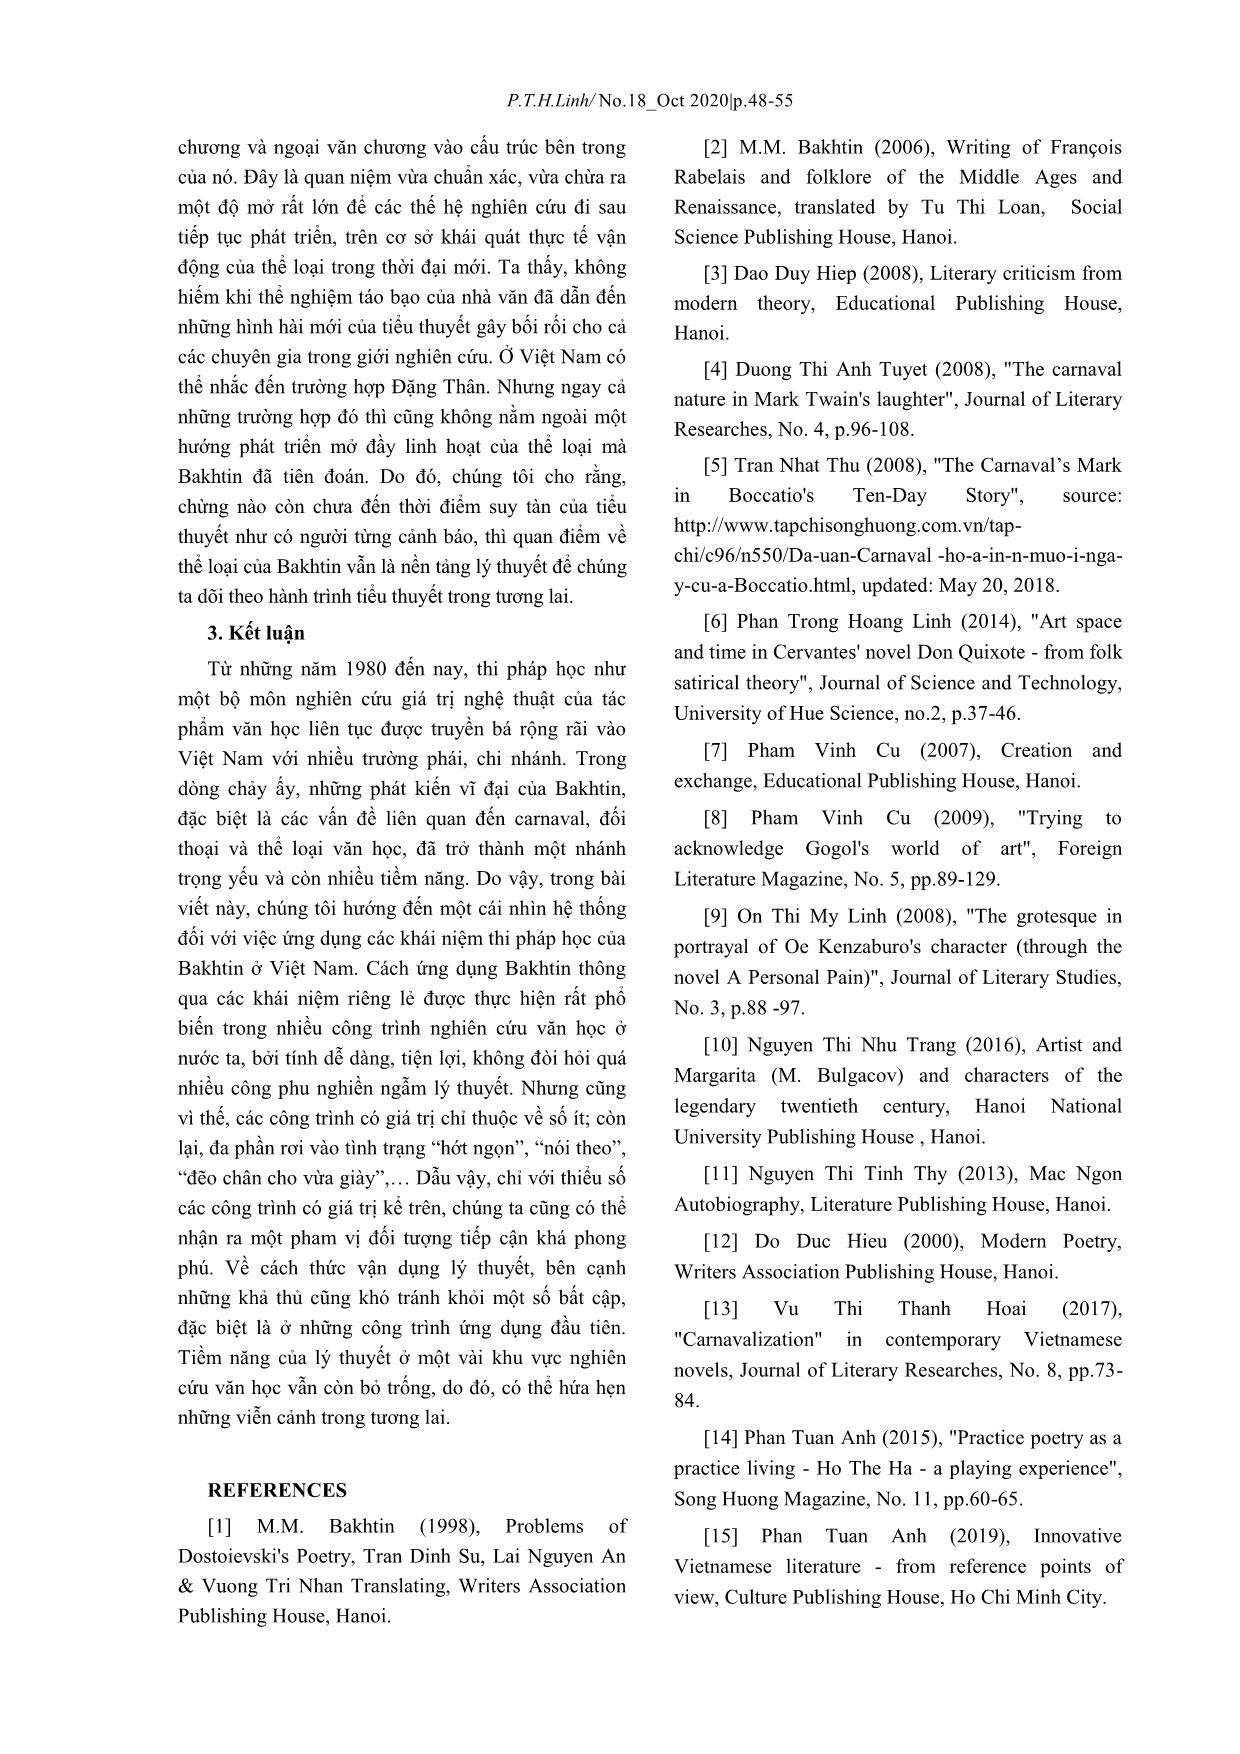 Ứng dụng thi pháp học của M. M. Bakhtin trong nghiên cứu – phê bình văn học ở Việt Nam từ cấp độ khái niệm trang 7